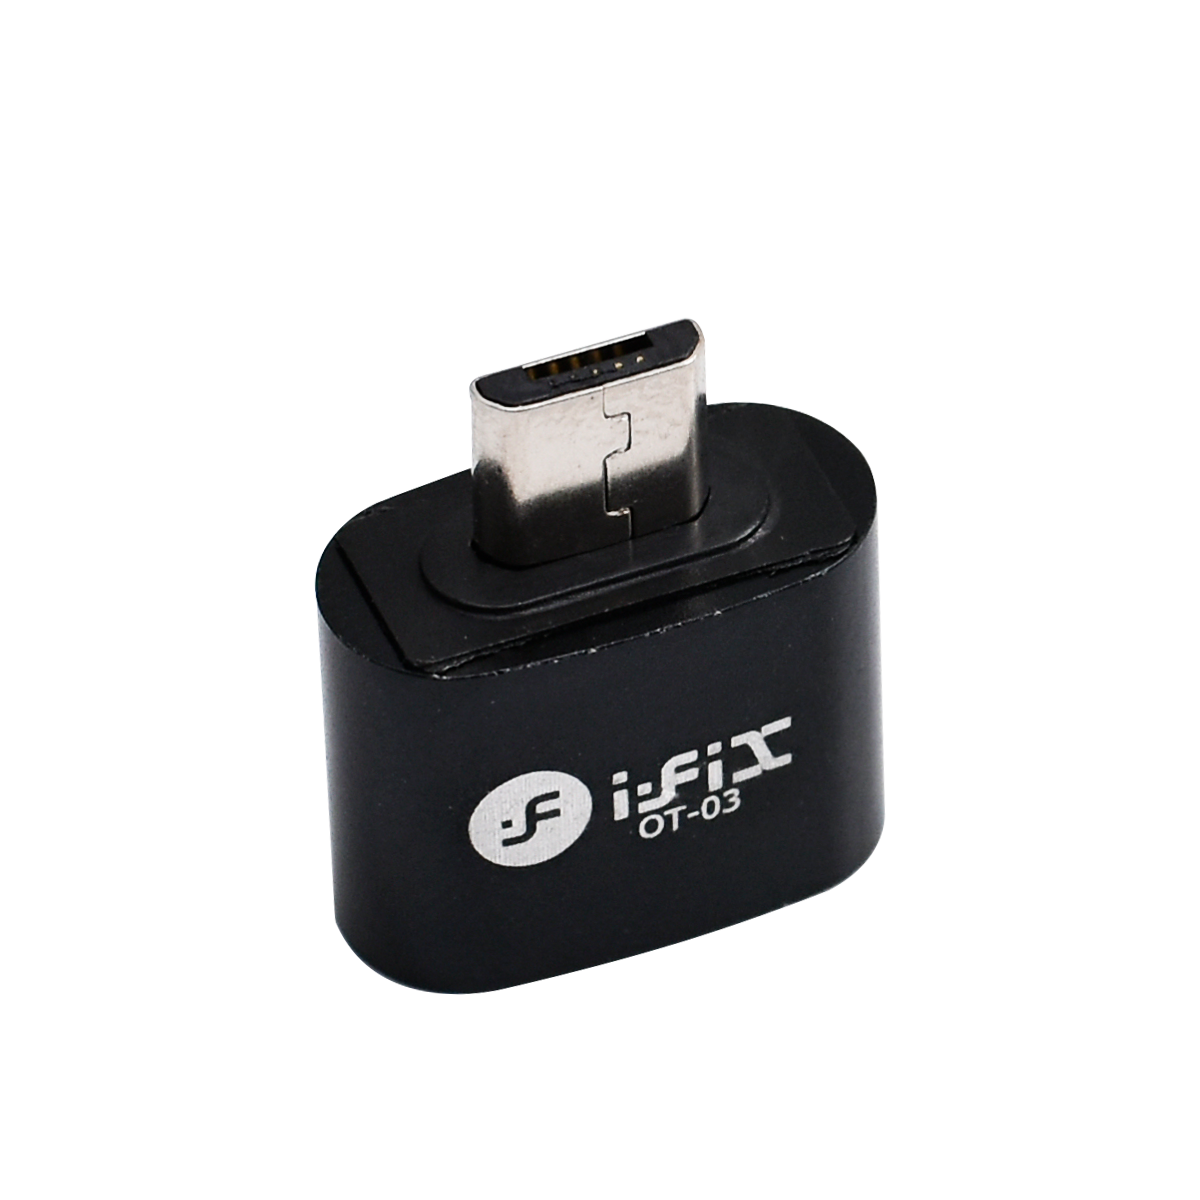 iFiX IF-03 Micro OTG Adapter  (Black)